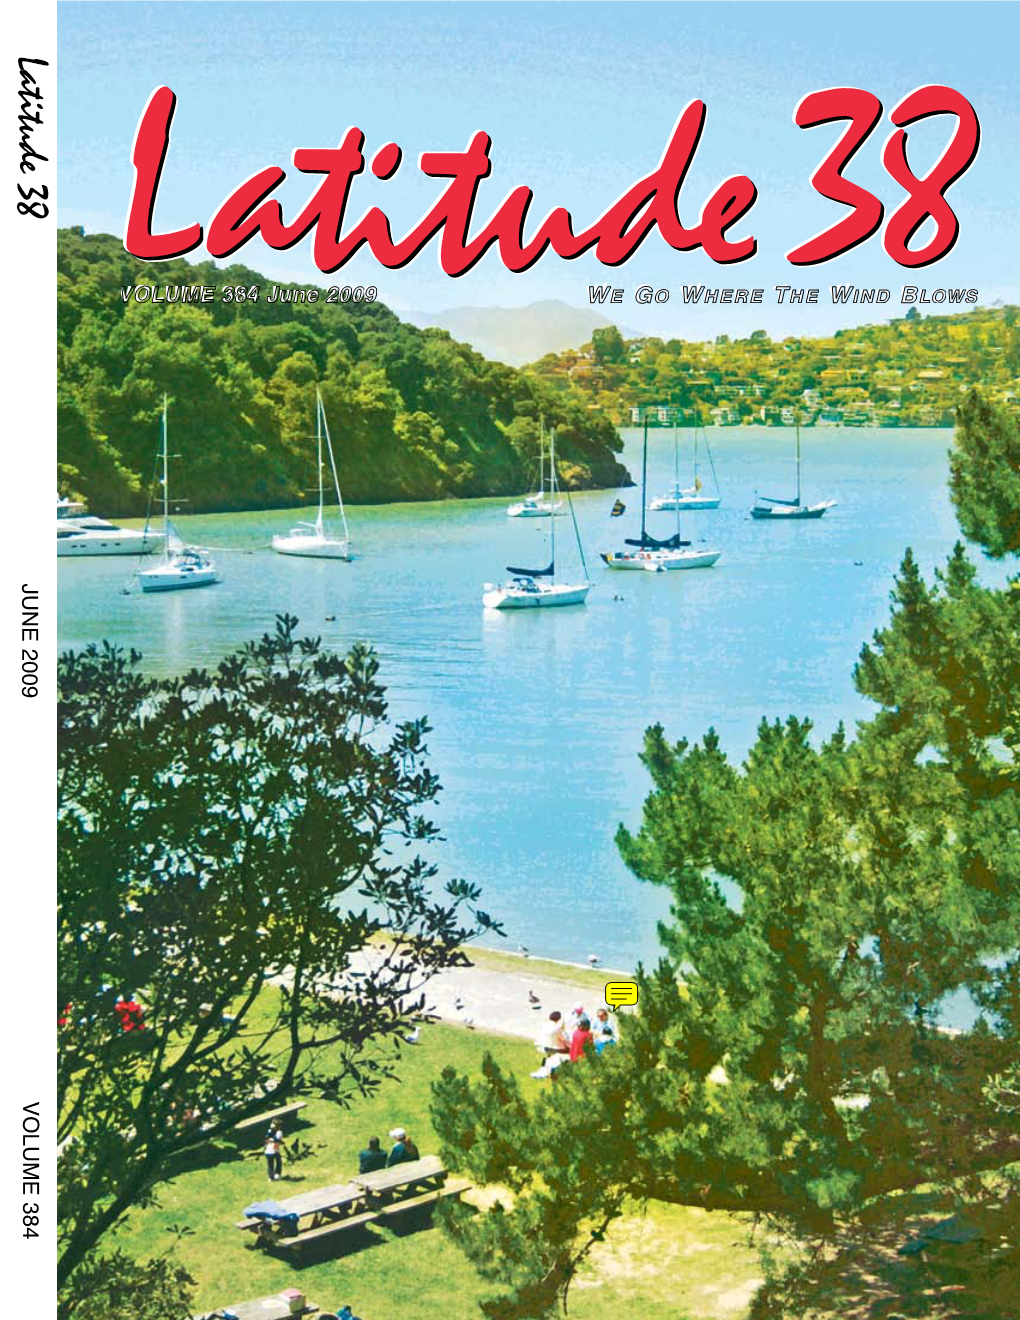 Latitude 38 June 2009